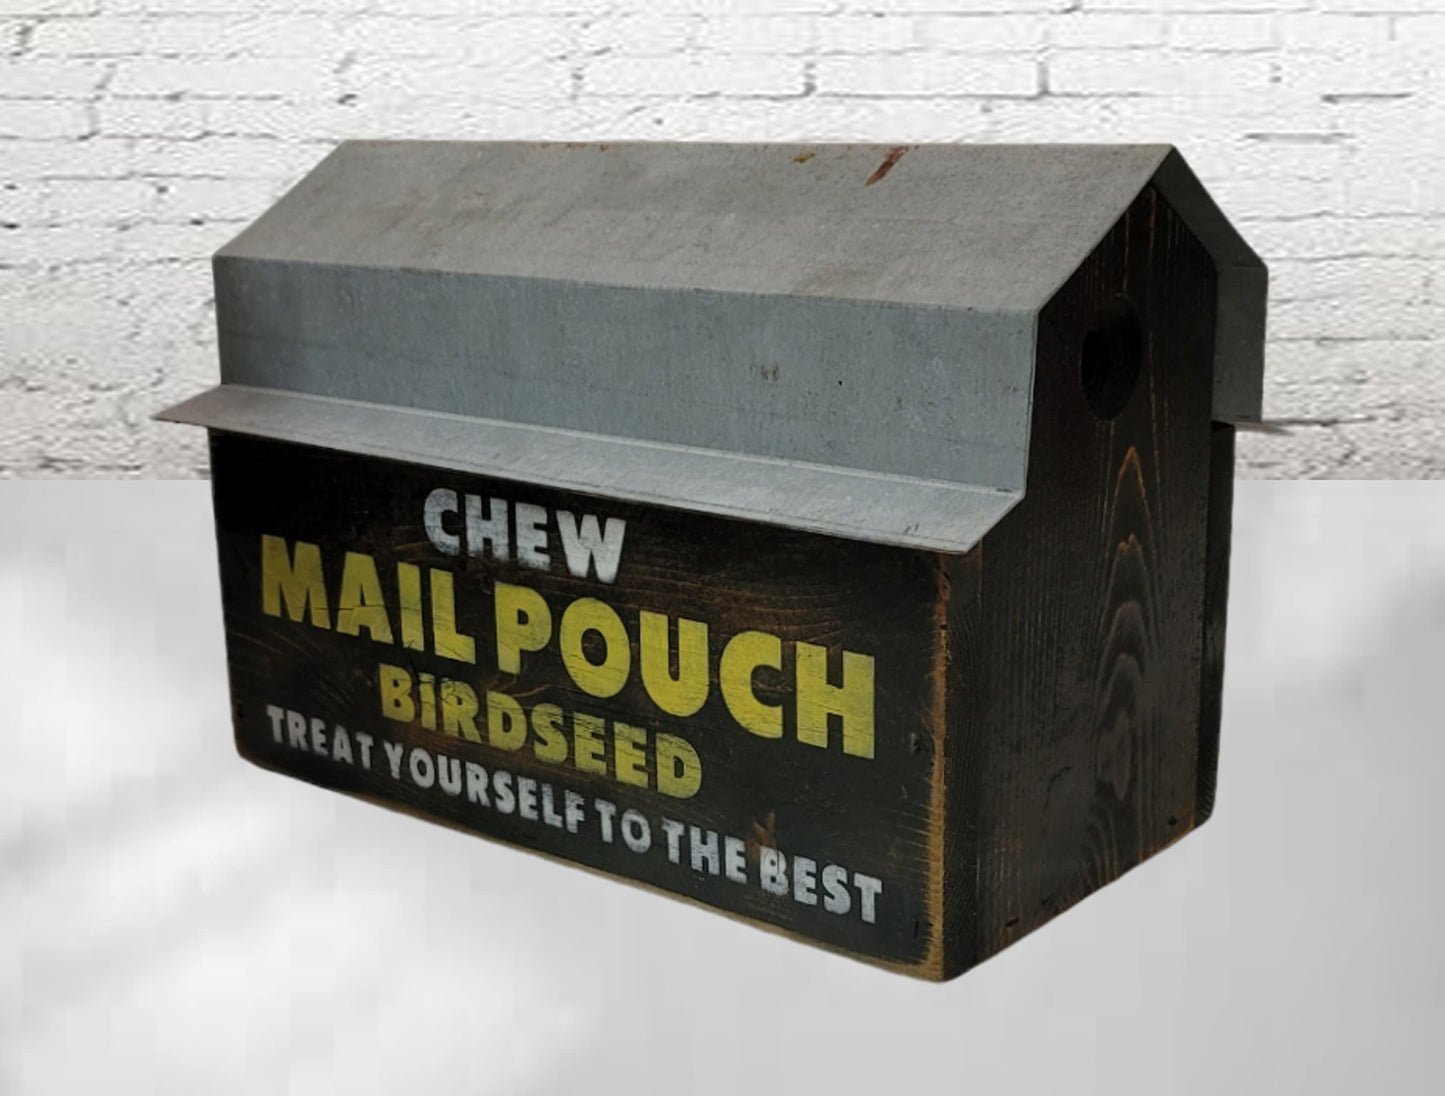 birdhouse mail pouch bird house barn farmhouse decor